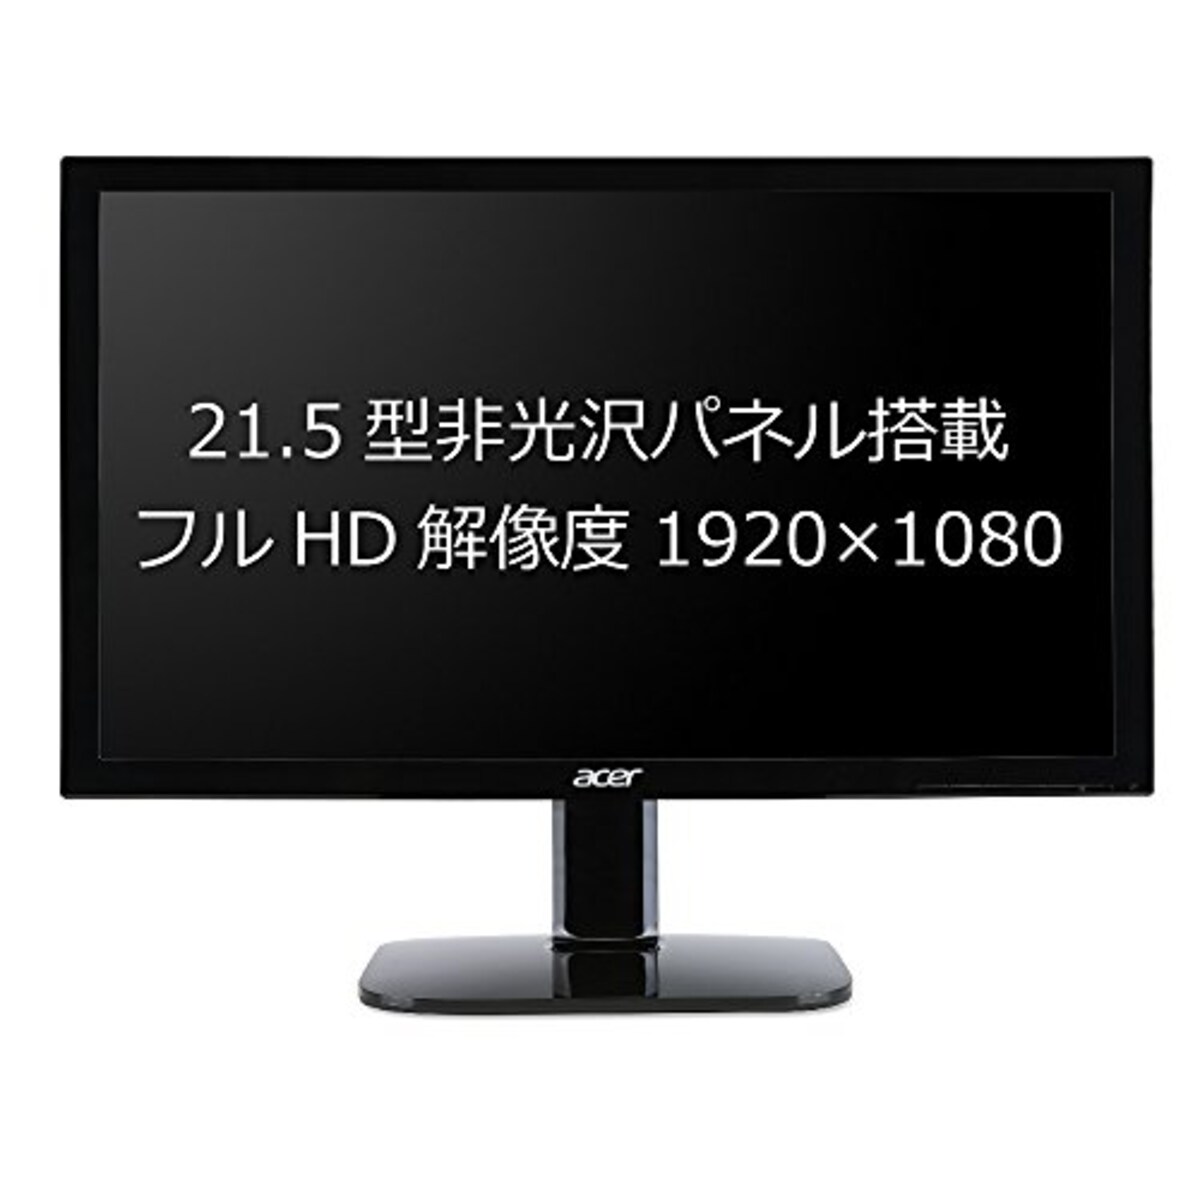  BUFFALO 外付けハードディスク 4TB テレビ録画/PC/PS4/4K対応 HD-AD4U3 + Acer モニター ディスプレイ KA220HQbid 21.5インチ/フルHD/5ms/HDMI端子対応画像5 